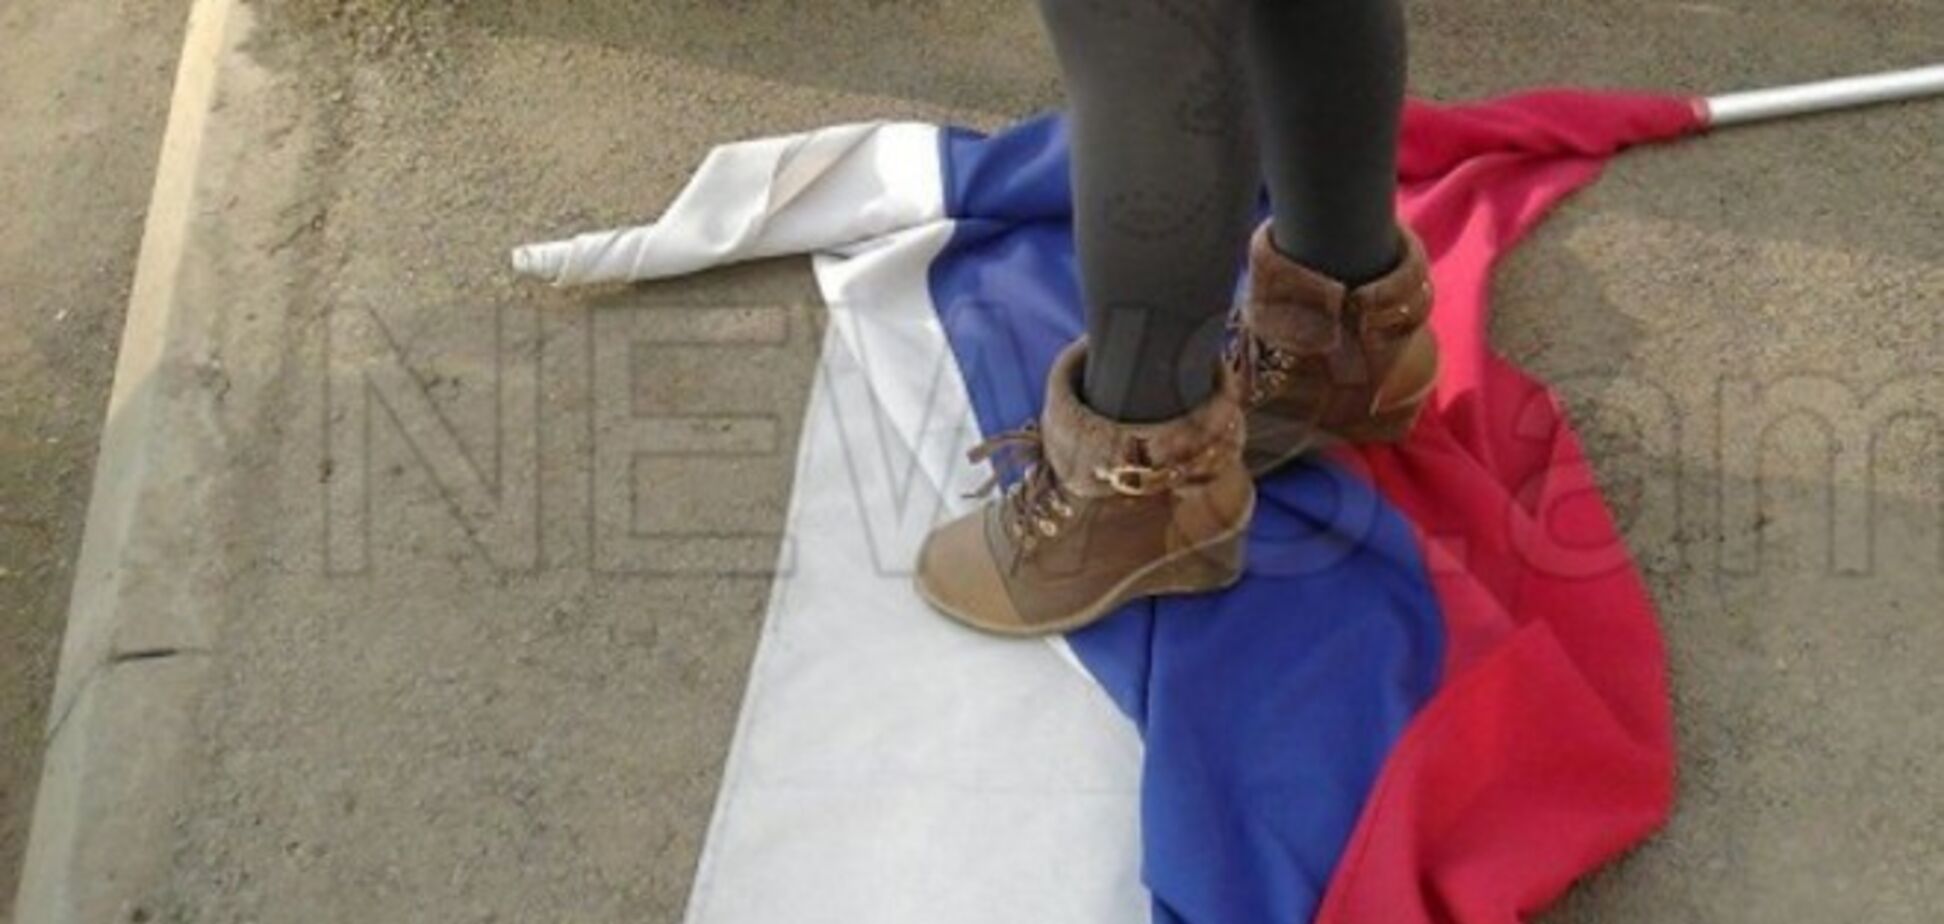 Участники антироссийского шествия в Армении поглумились над флагом РФ: опубликованы фото и видео